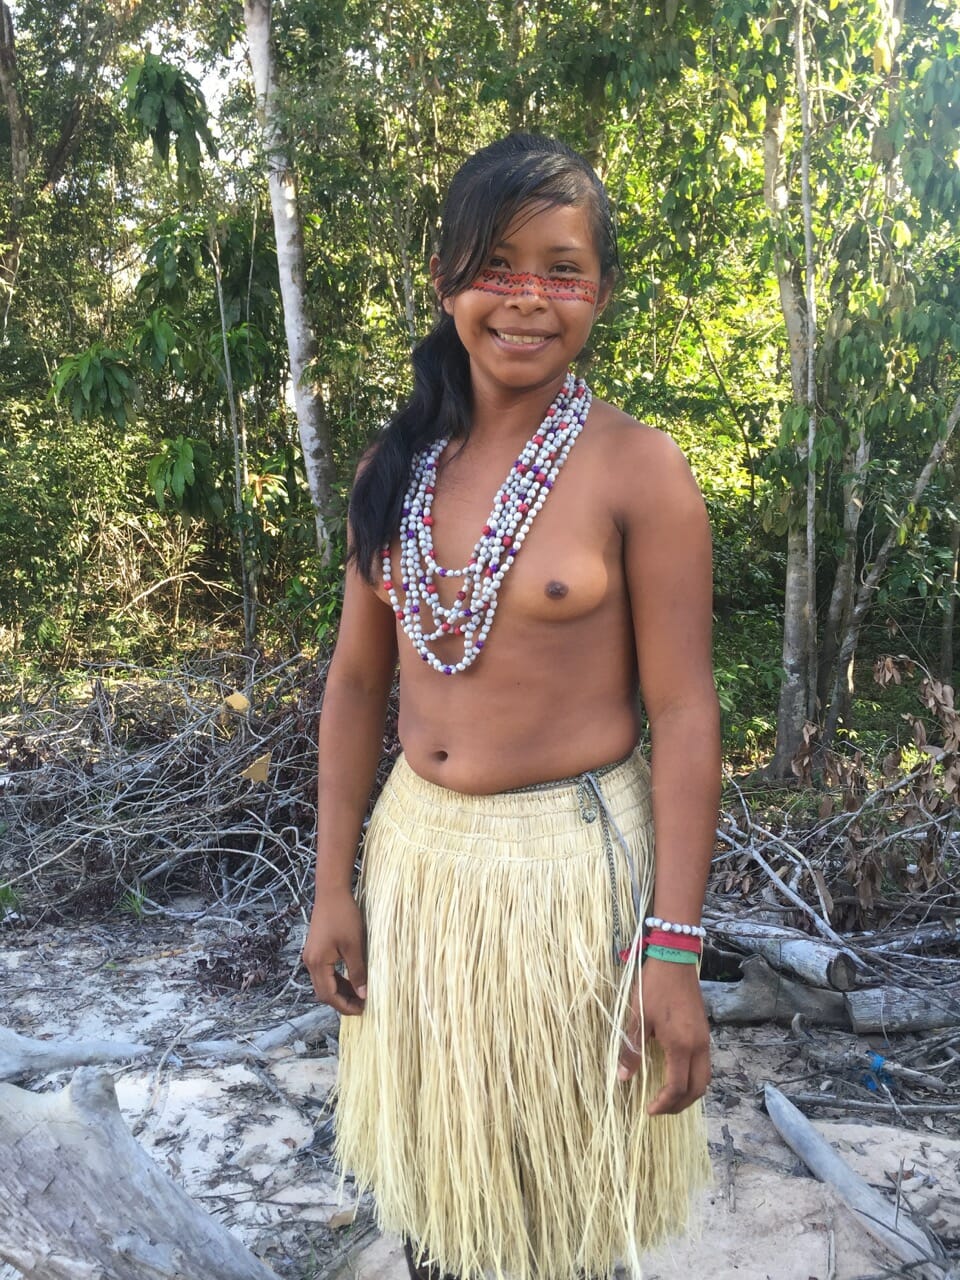 Samoan Big Tits Pics.